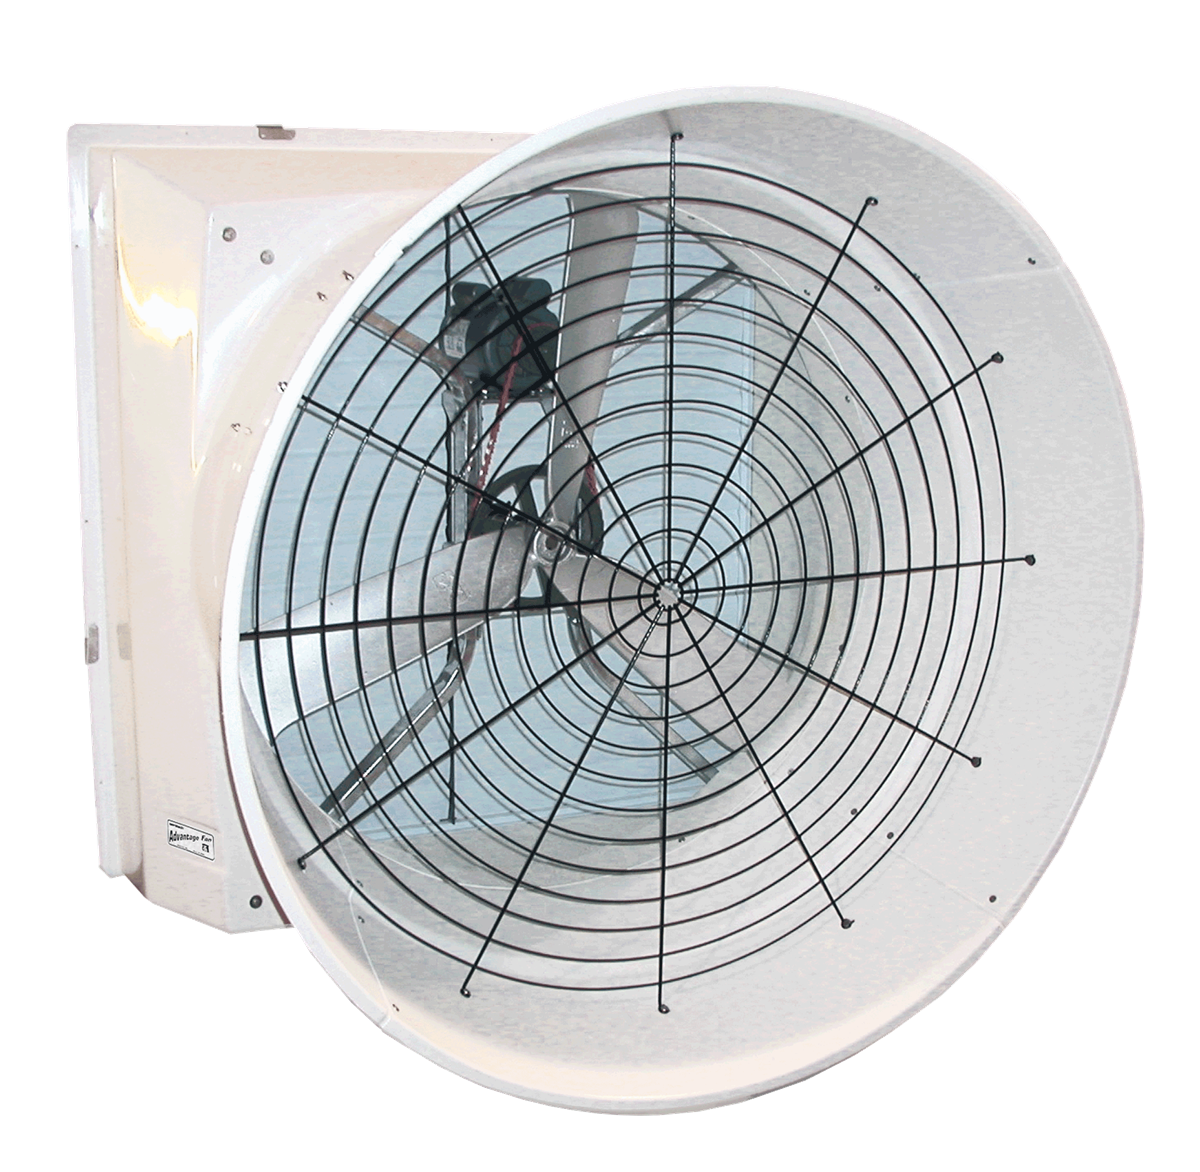 Mini Fan вентилятор cs1326. YHFS HDS-501524h вентилятор. Вентилятор VD 501. Вытяжной вентилятор 800*800. Вентилятор осевой fan